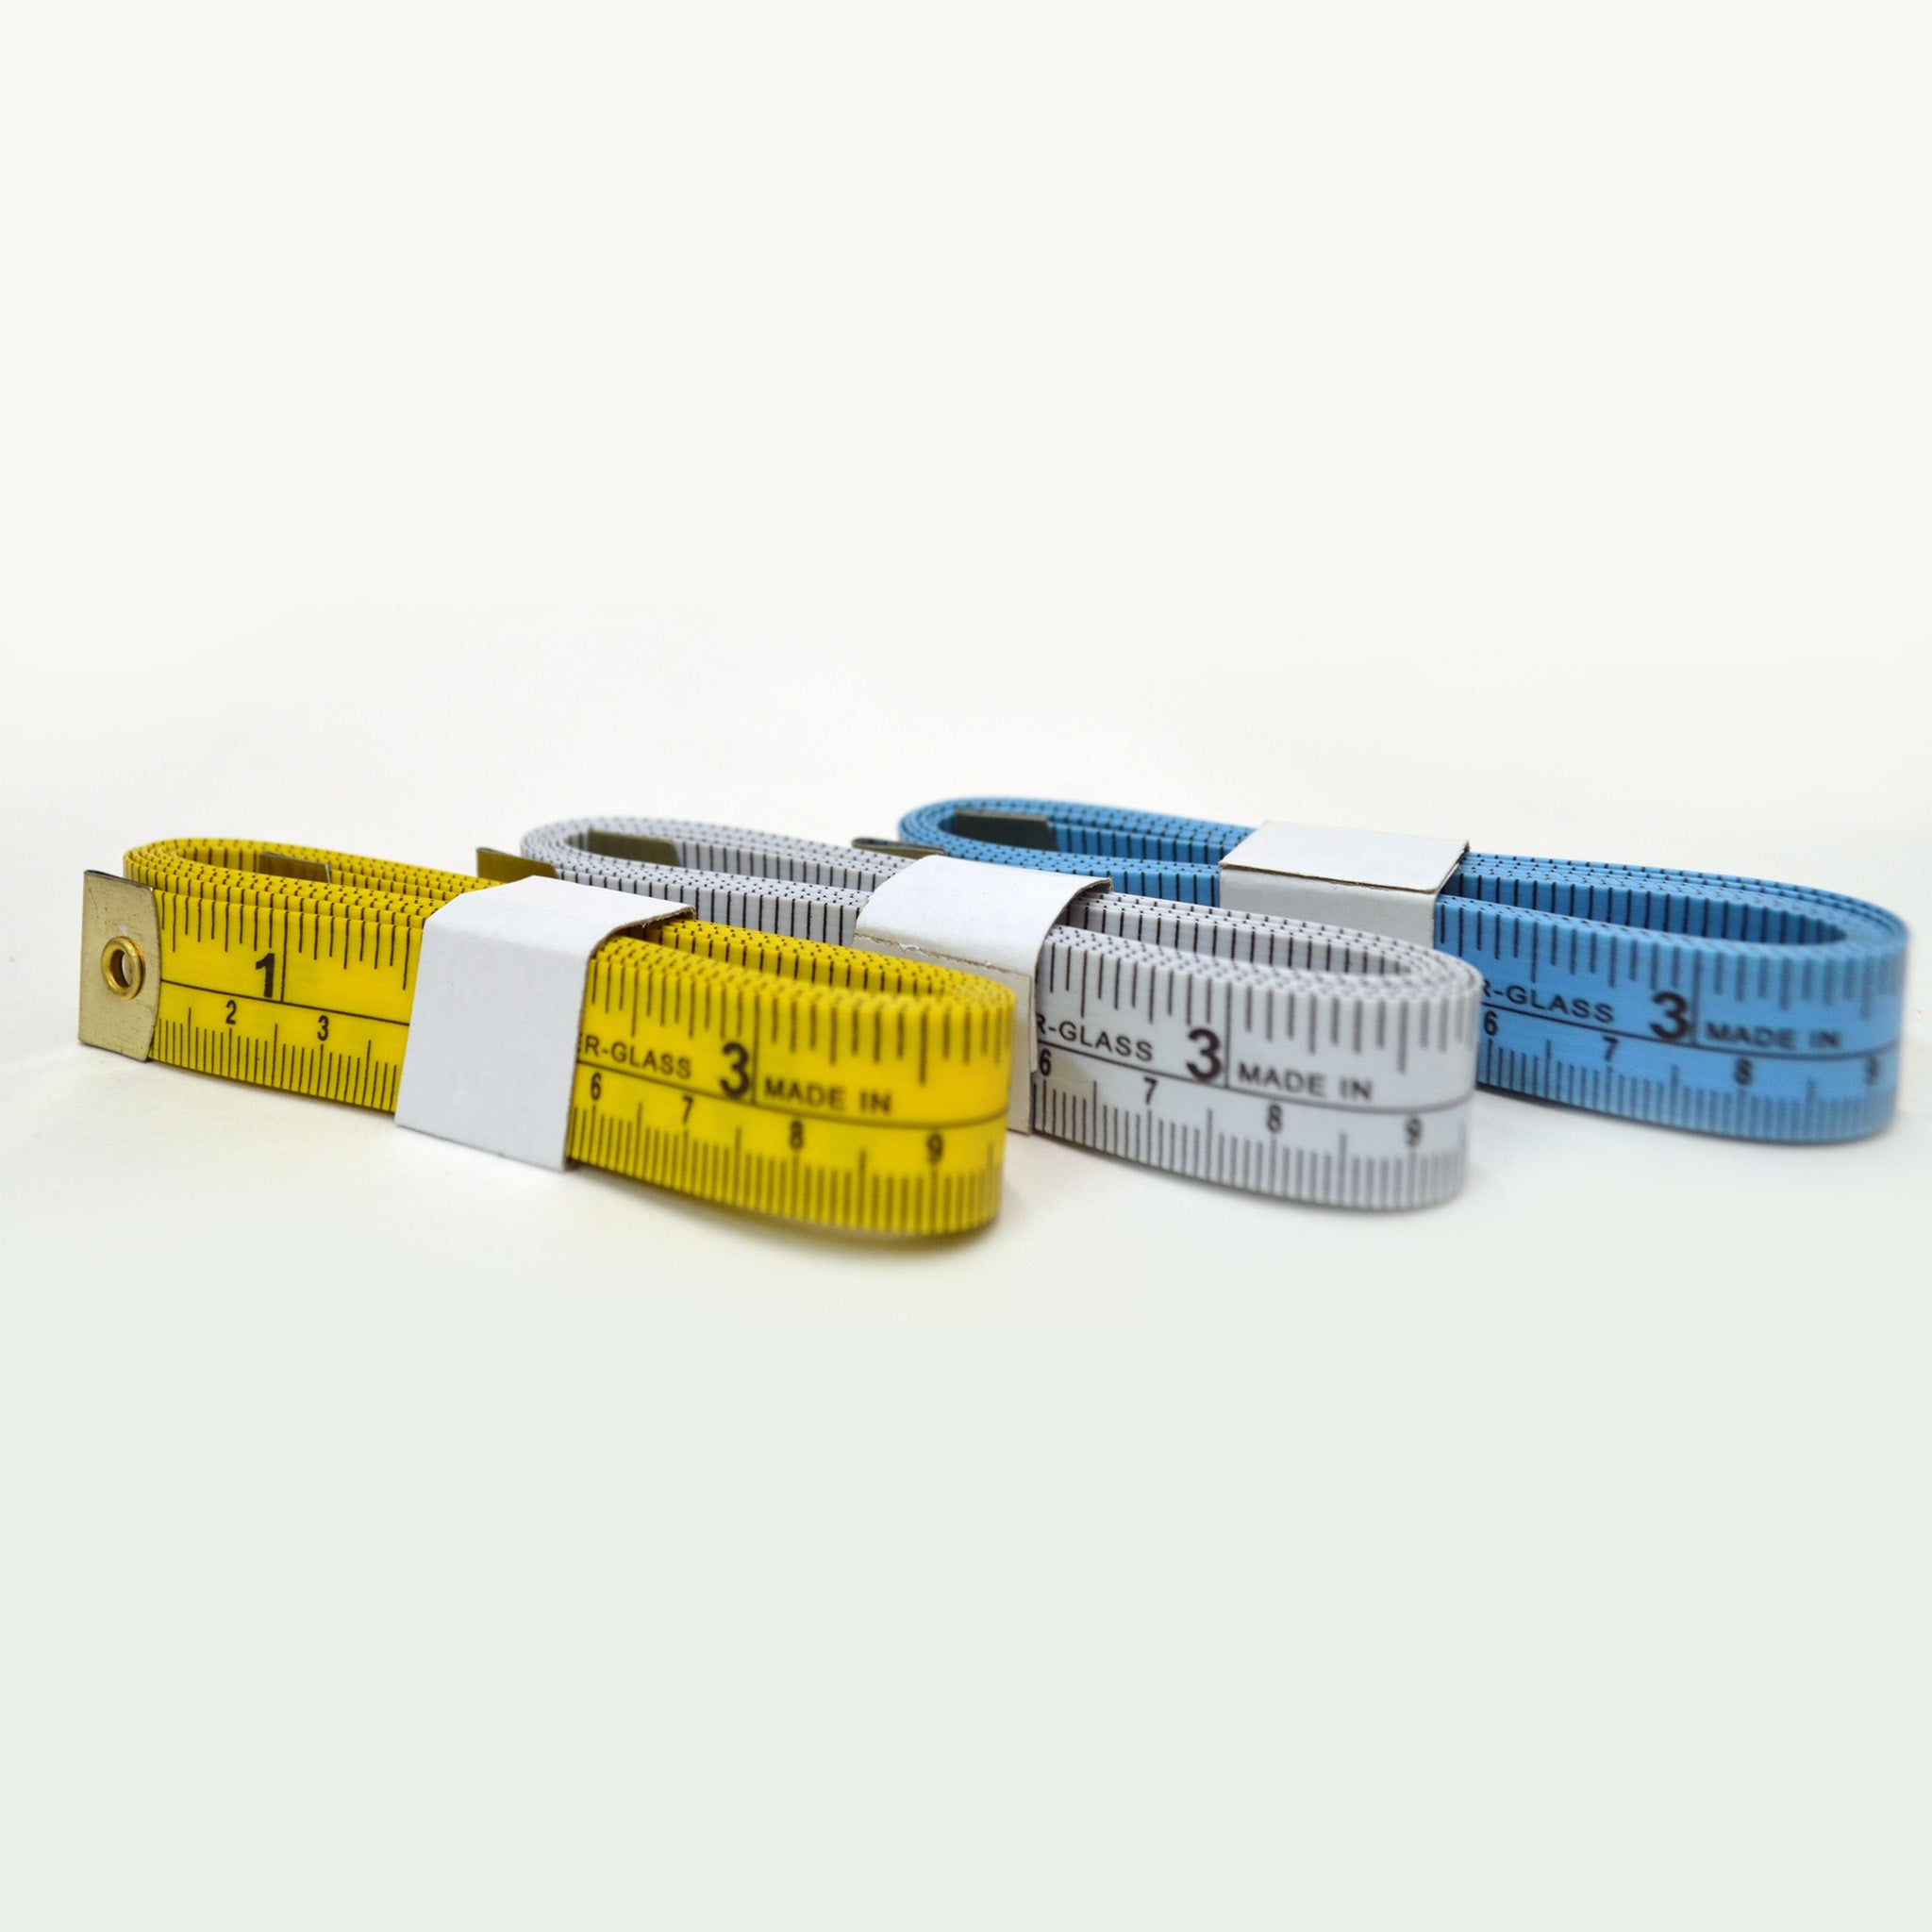 220cm Self Adhesive Yellow Metric Ruler Tape Measure Manufacturers